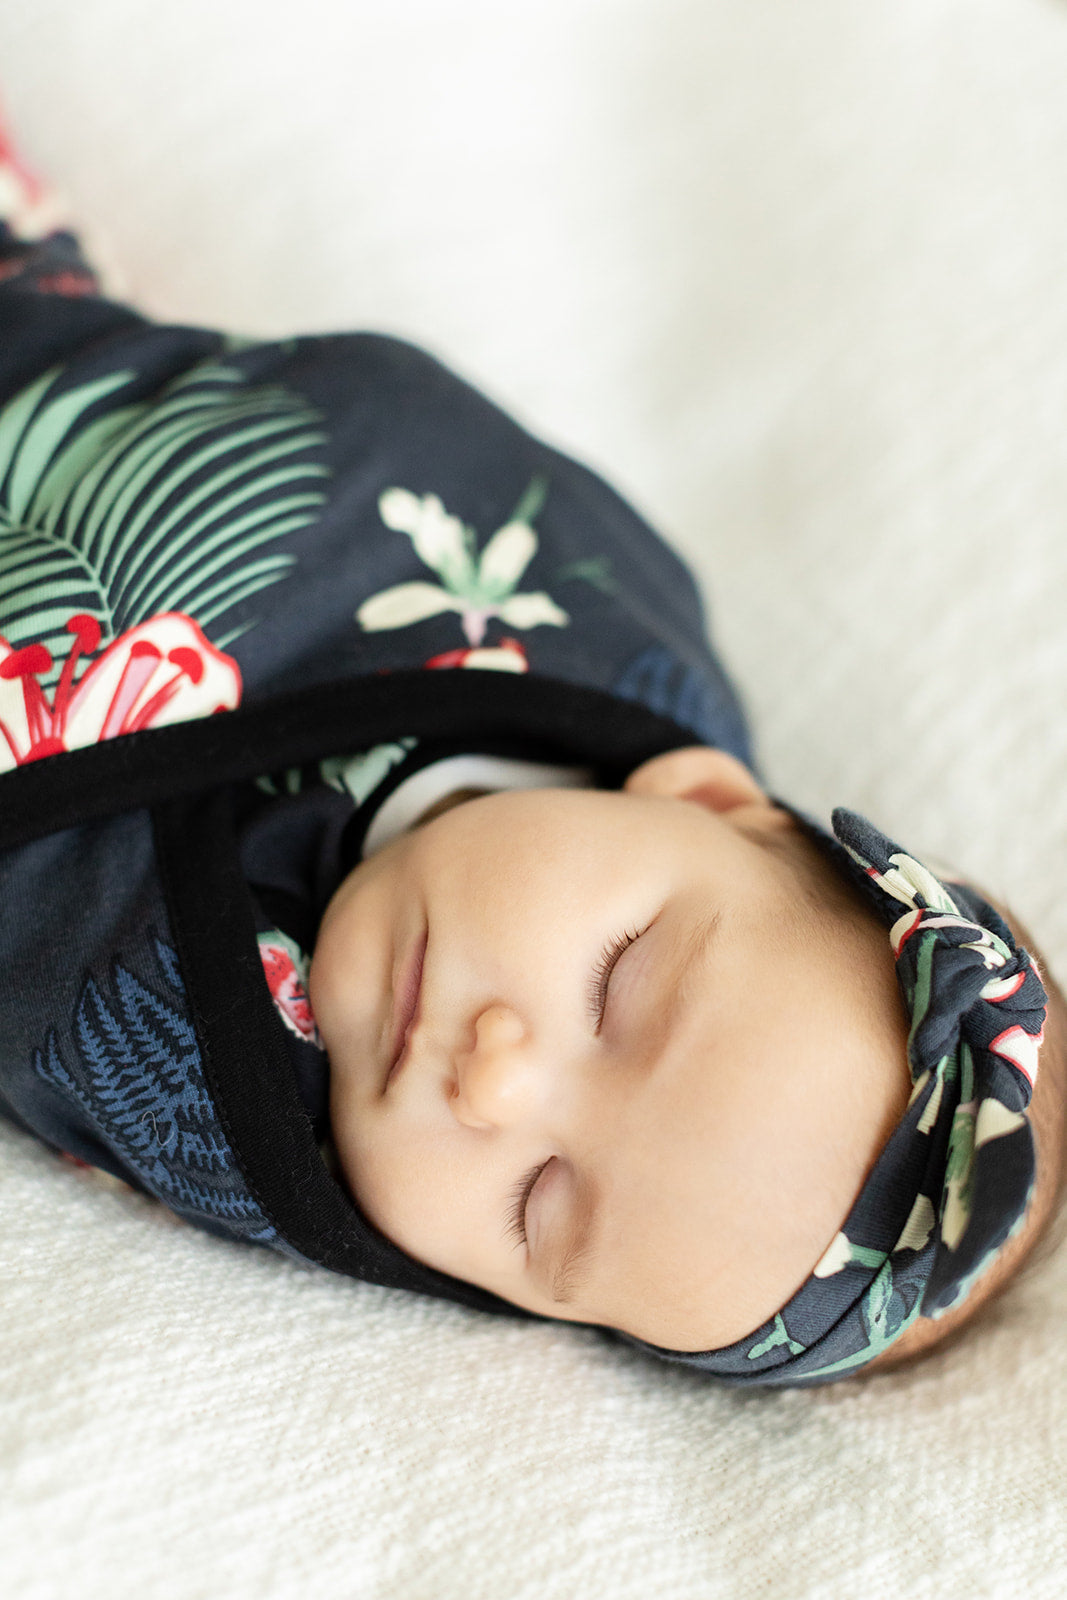 Sage Green Pregnancy/Postpartum Robe & Elise Swaddle Blanket Set